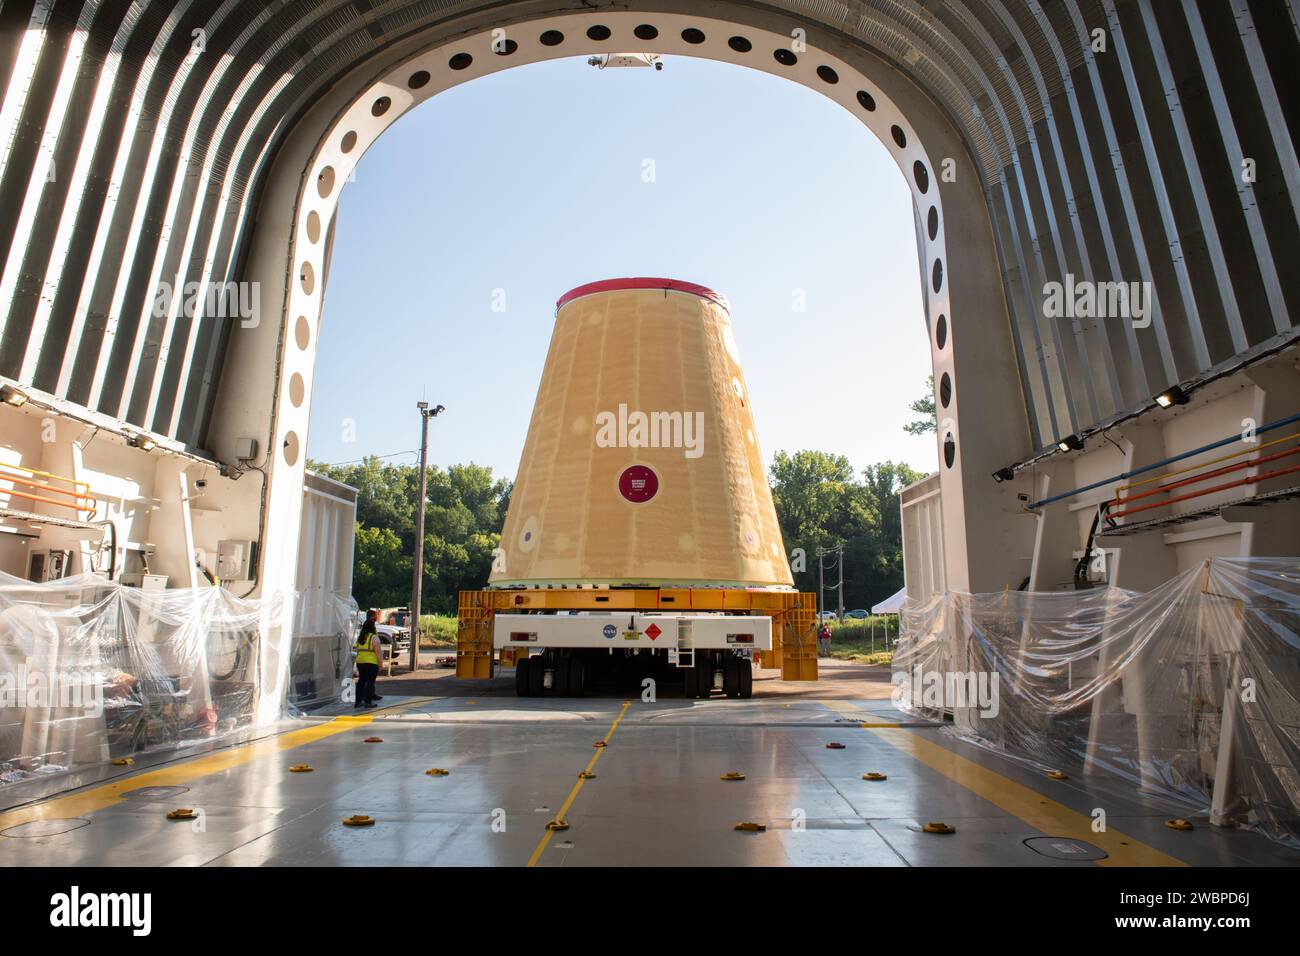 L’équipe Move charge l’adaptateur de scène du lanceur, qui fait partie de la nouvelle fusée SLS (Space Launch System) de l’agence, sur la barge Pegasus de la NASA au Marshall Space Flight Center de la NASA à Huntsville, en Alabama, en juillet 17. L’adaptateur de scène du lanceur, qui relie l’étage central de 212 pieds de haut de la fusée à l’étage supérieur de la fusée, est expédié au Kennedy Space Center de la NASA en Floride pour les préparatifs de lancement d’Artemis I. C'est la dernière pièce du matériel de fusée Artemis I SLS construit à Marshall pour être livré à Kennedy. Seulement la phase de base du SLS, actuellement en test final au Stennis Space Center ne Banque D'Images